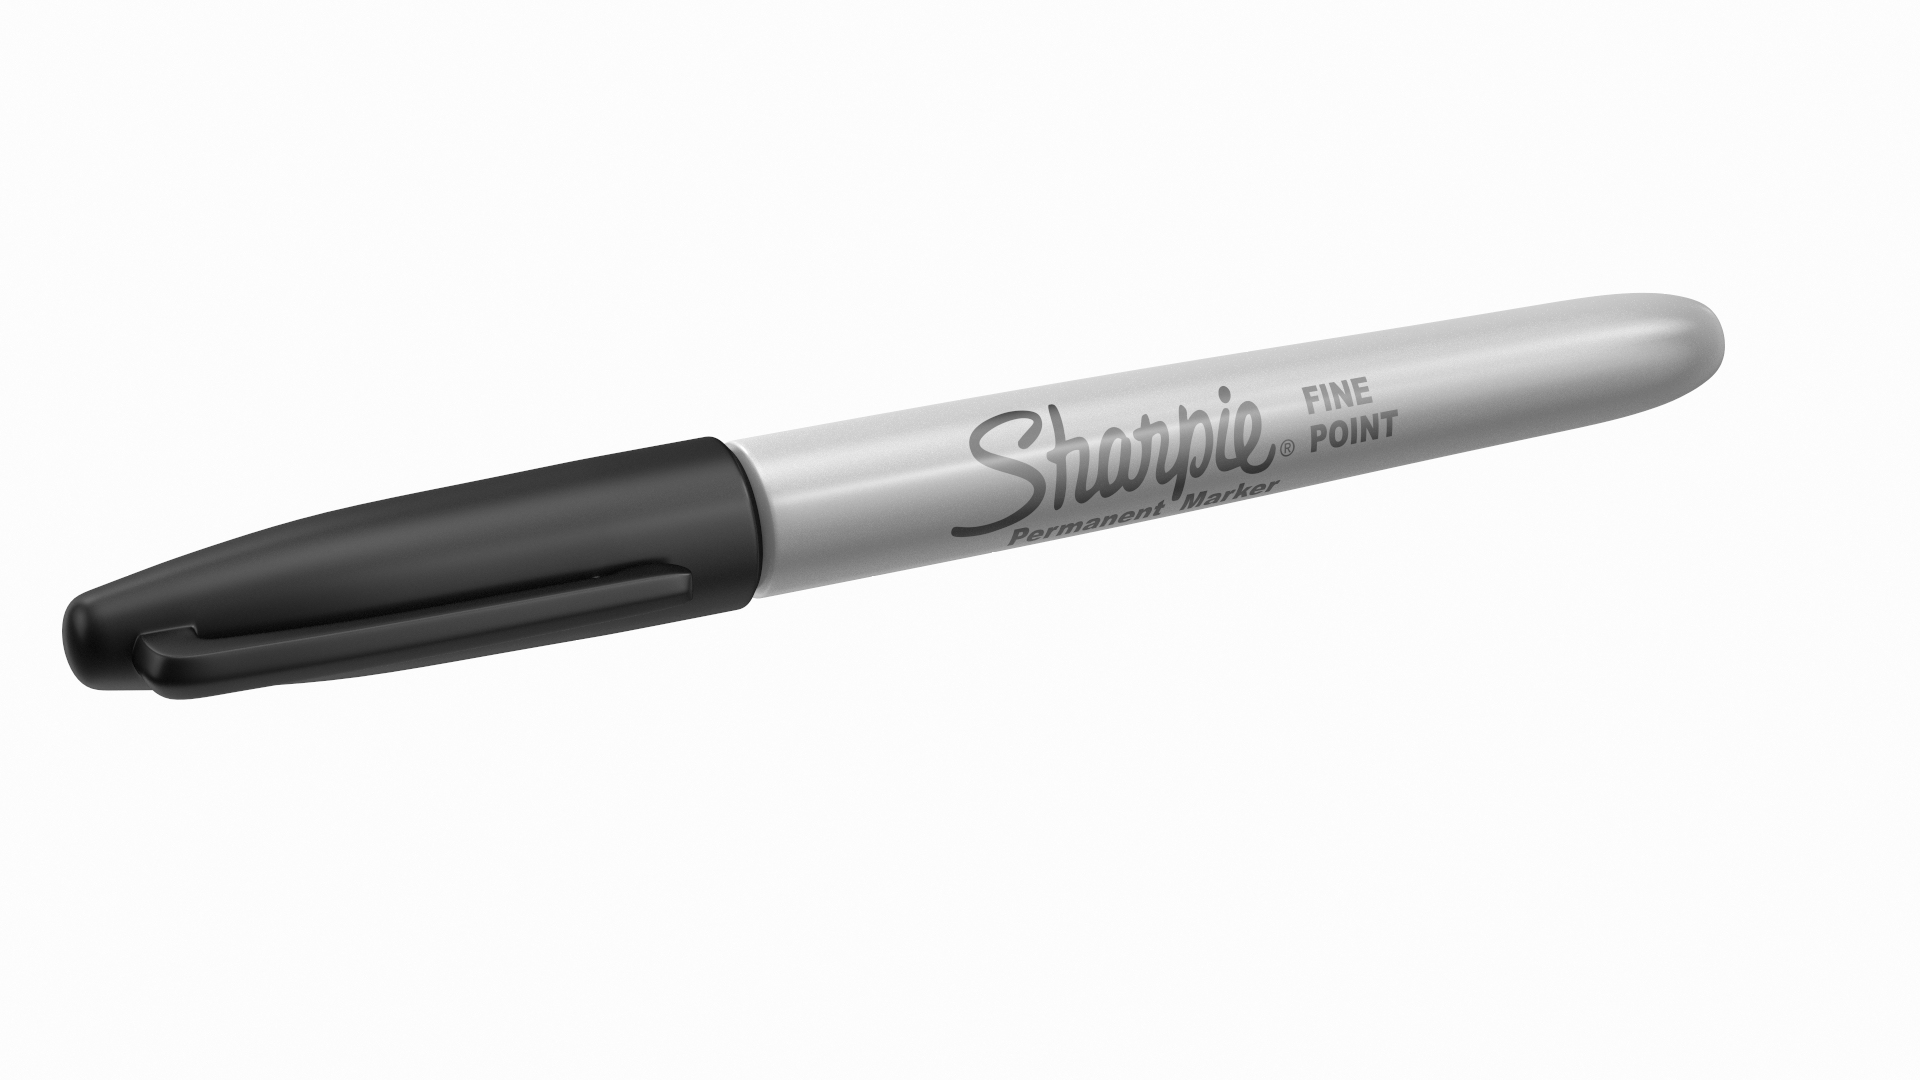 sharpie holder by 3D-maker, Download free STL model